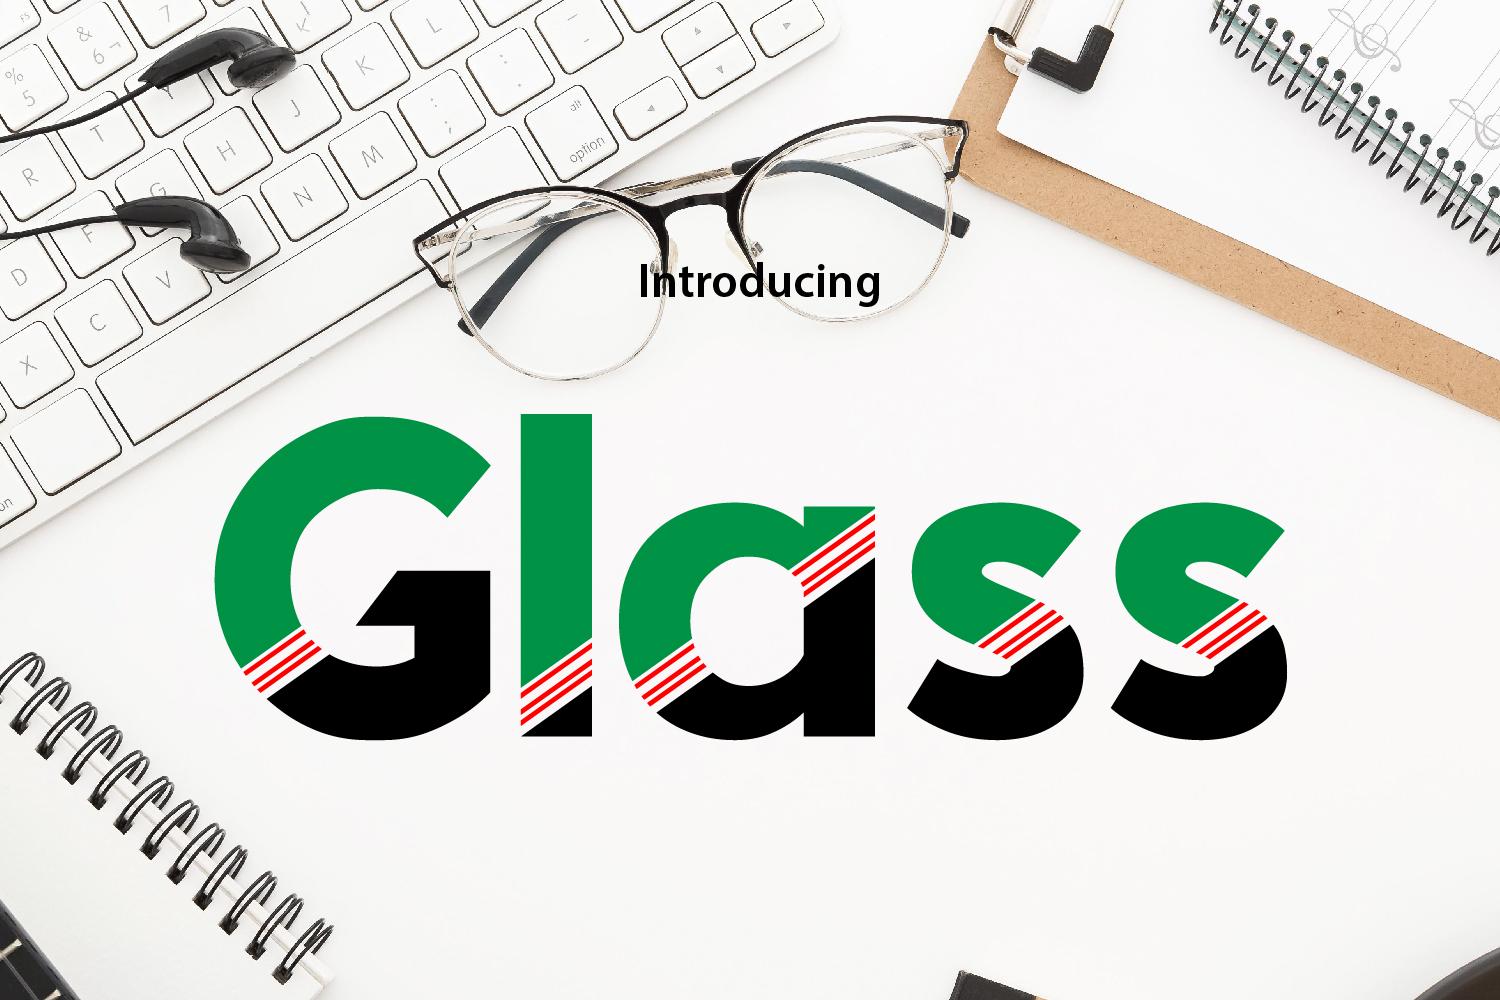 Glass Font